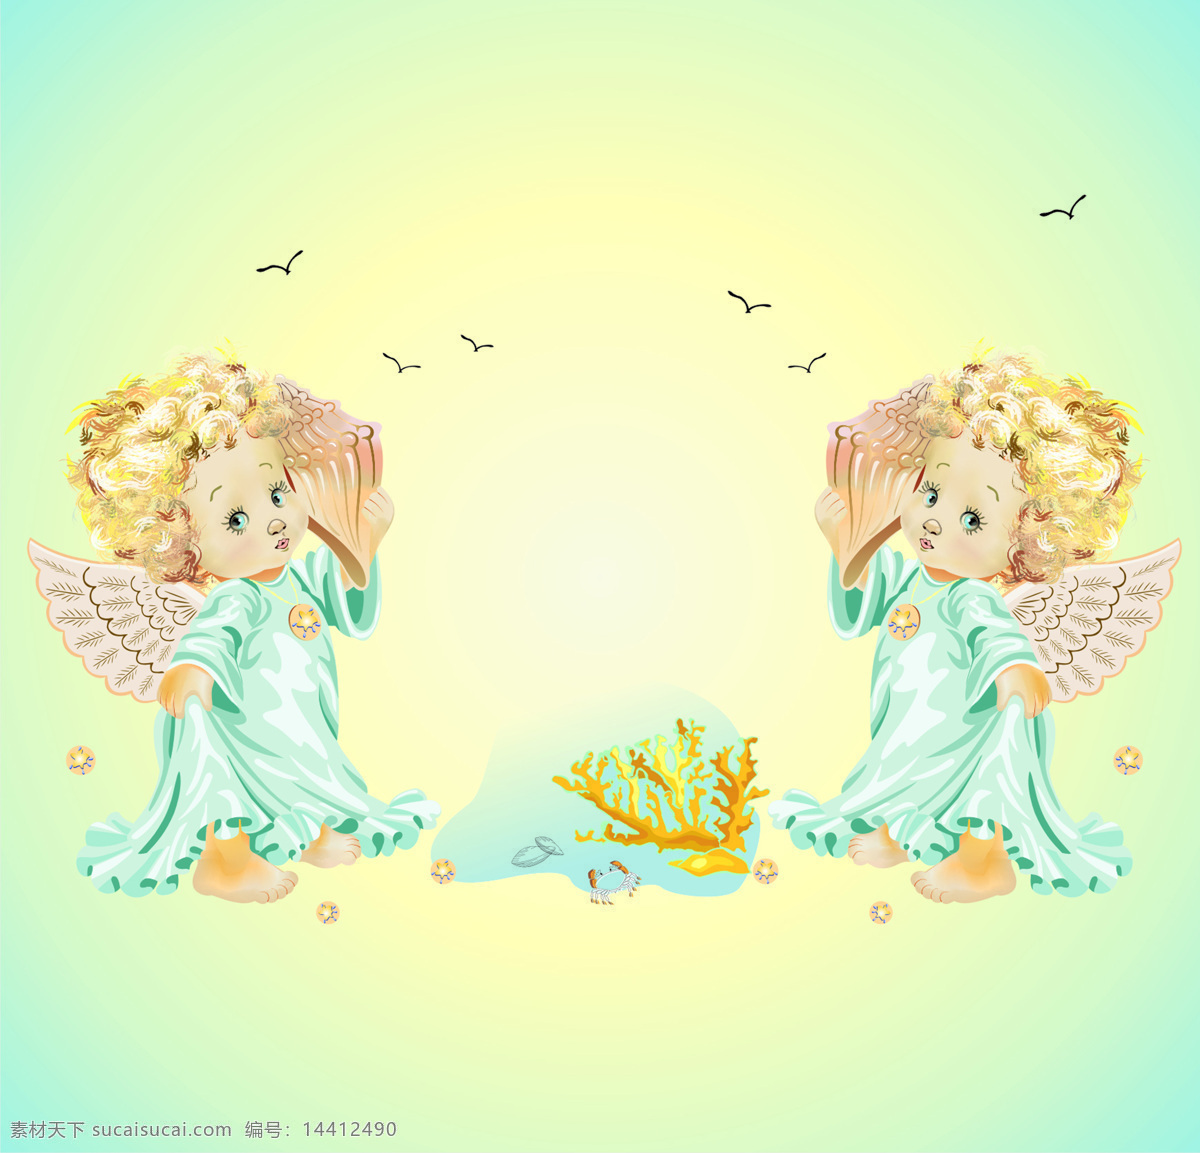 天使 天使宝宝 人物图库 儿童幼儿 设计图库